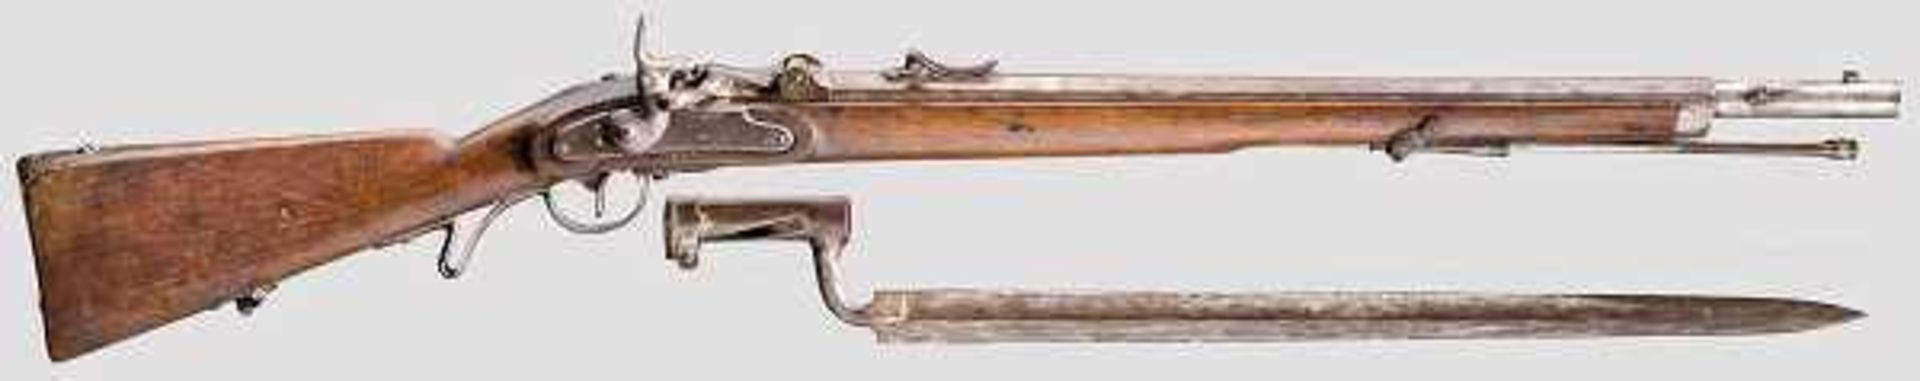 Jägerstutzen Wänzel M 1862/67 Kal. 13,9 mm, Nr. 546. Fast blanker Oktogonlauf mit scharfem Zug/